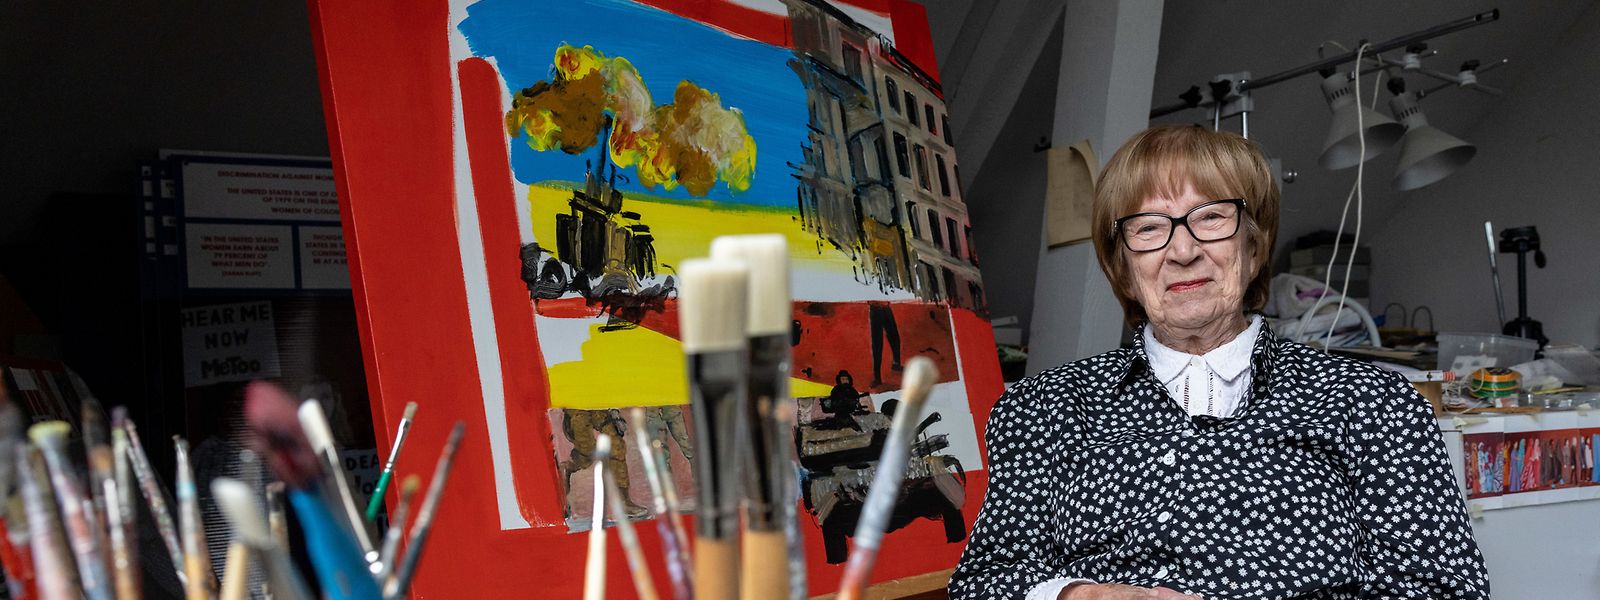 Starke Frau und starke Bilder: Berthe Lutgen in ihrem Atelier.